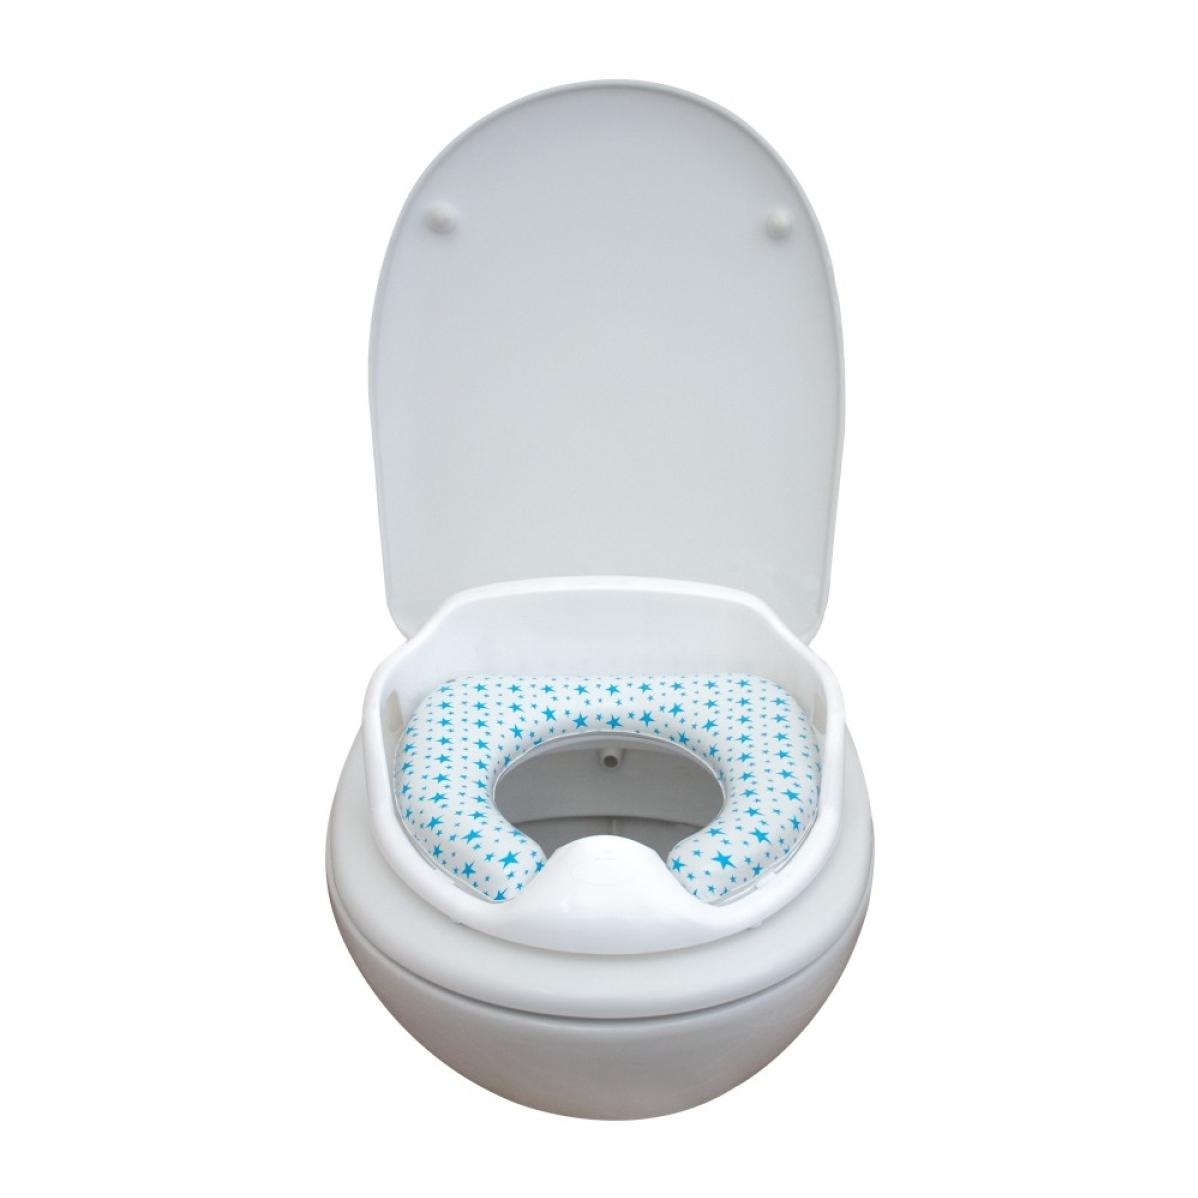 Siège de toilette adaptateur confortable en silicone Bleu